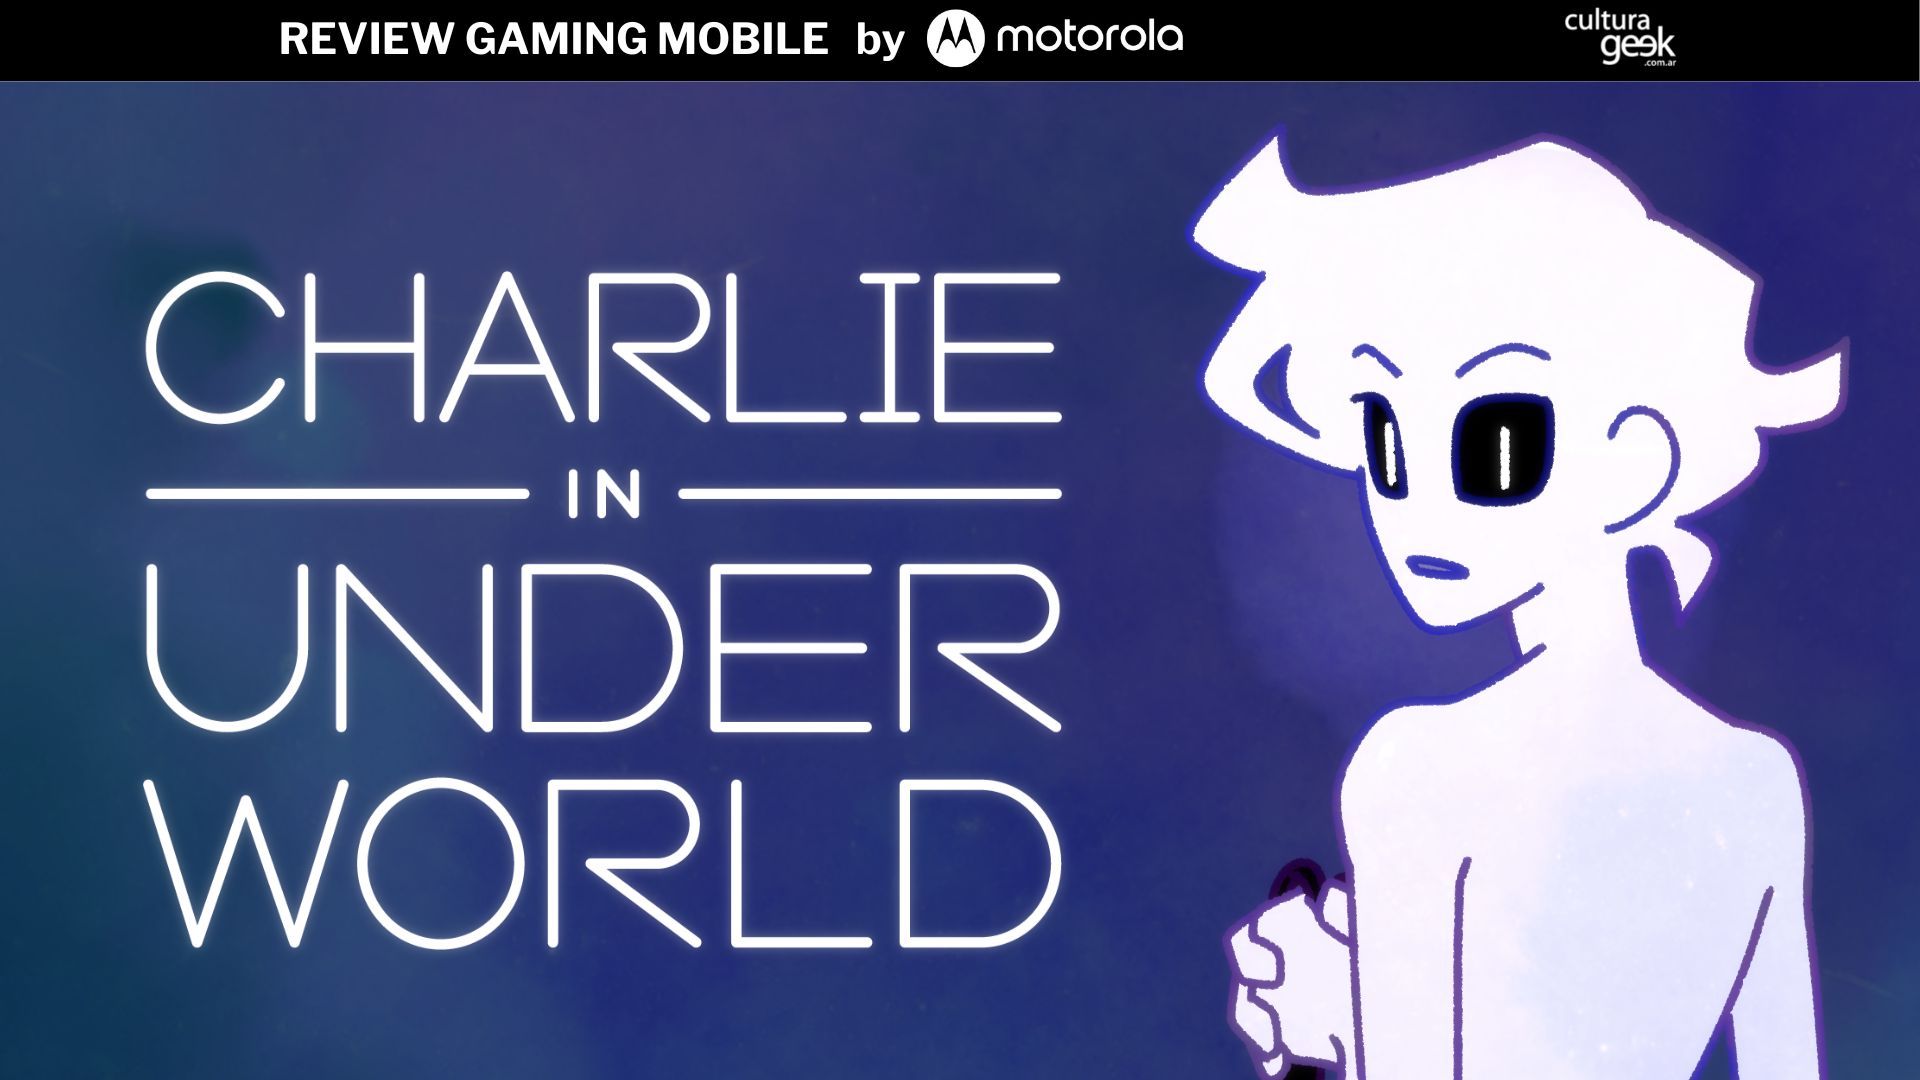 Charlie in Under World